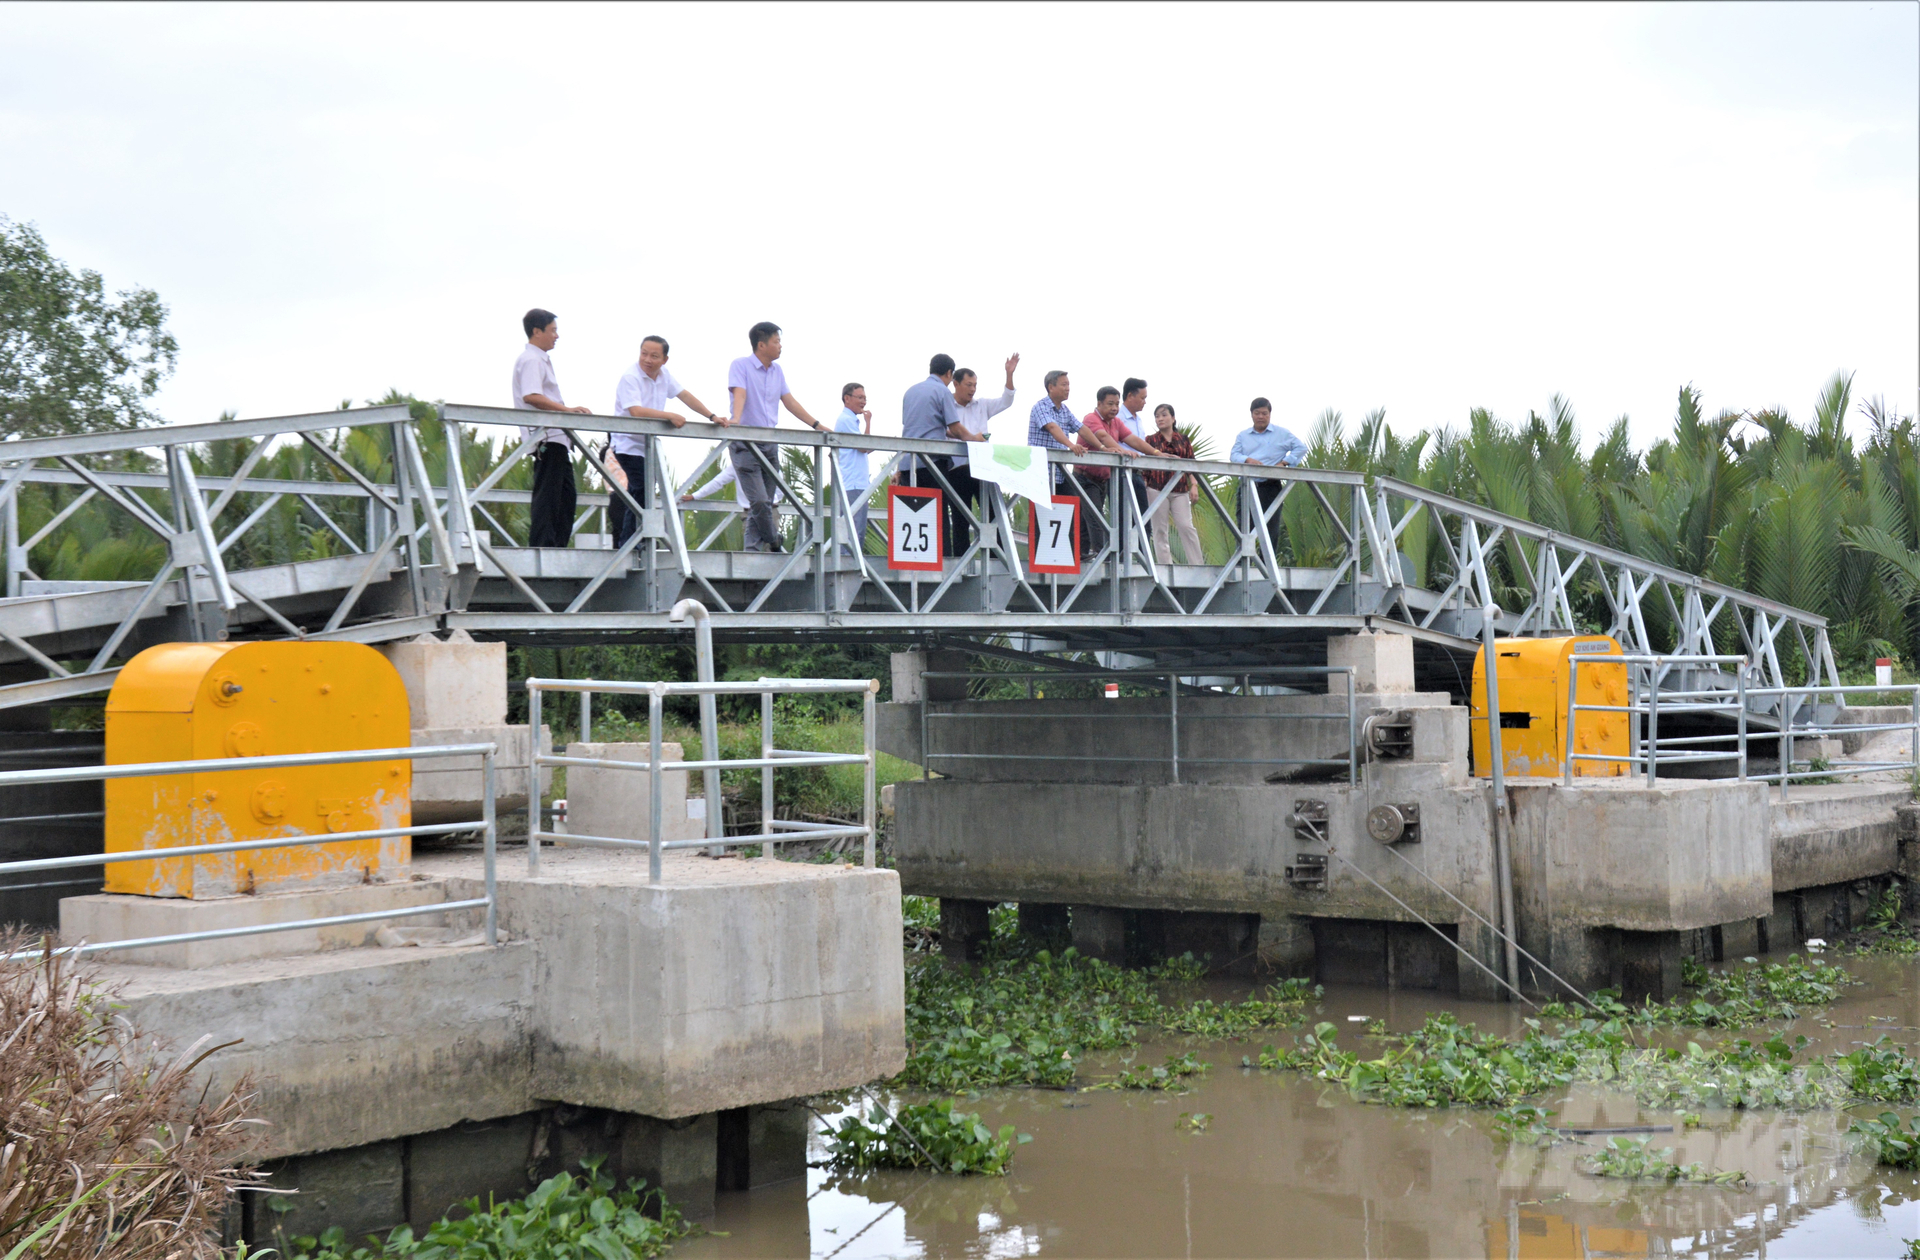 Quá trình triển khai thực hiện dự án VnSAT, tại tỉnh Kiên Giang đã có 22 hợp tác xã được đầu tư cơ sở hạ tầng và tập huấn về kỹ thuật 3 giảm 3 tăng, 1 phải 5 giảm cho 53 hợp tác xã và tổ hợp tác. Ảnh: Trung Chánh.